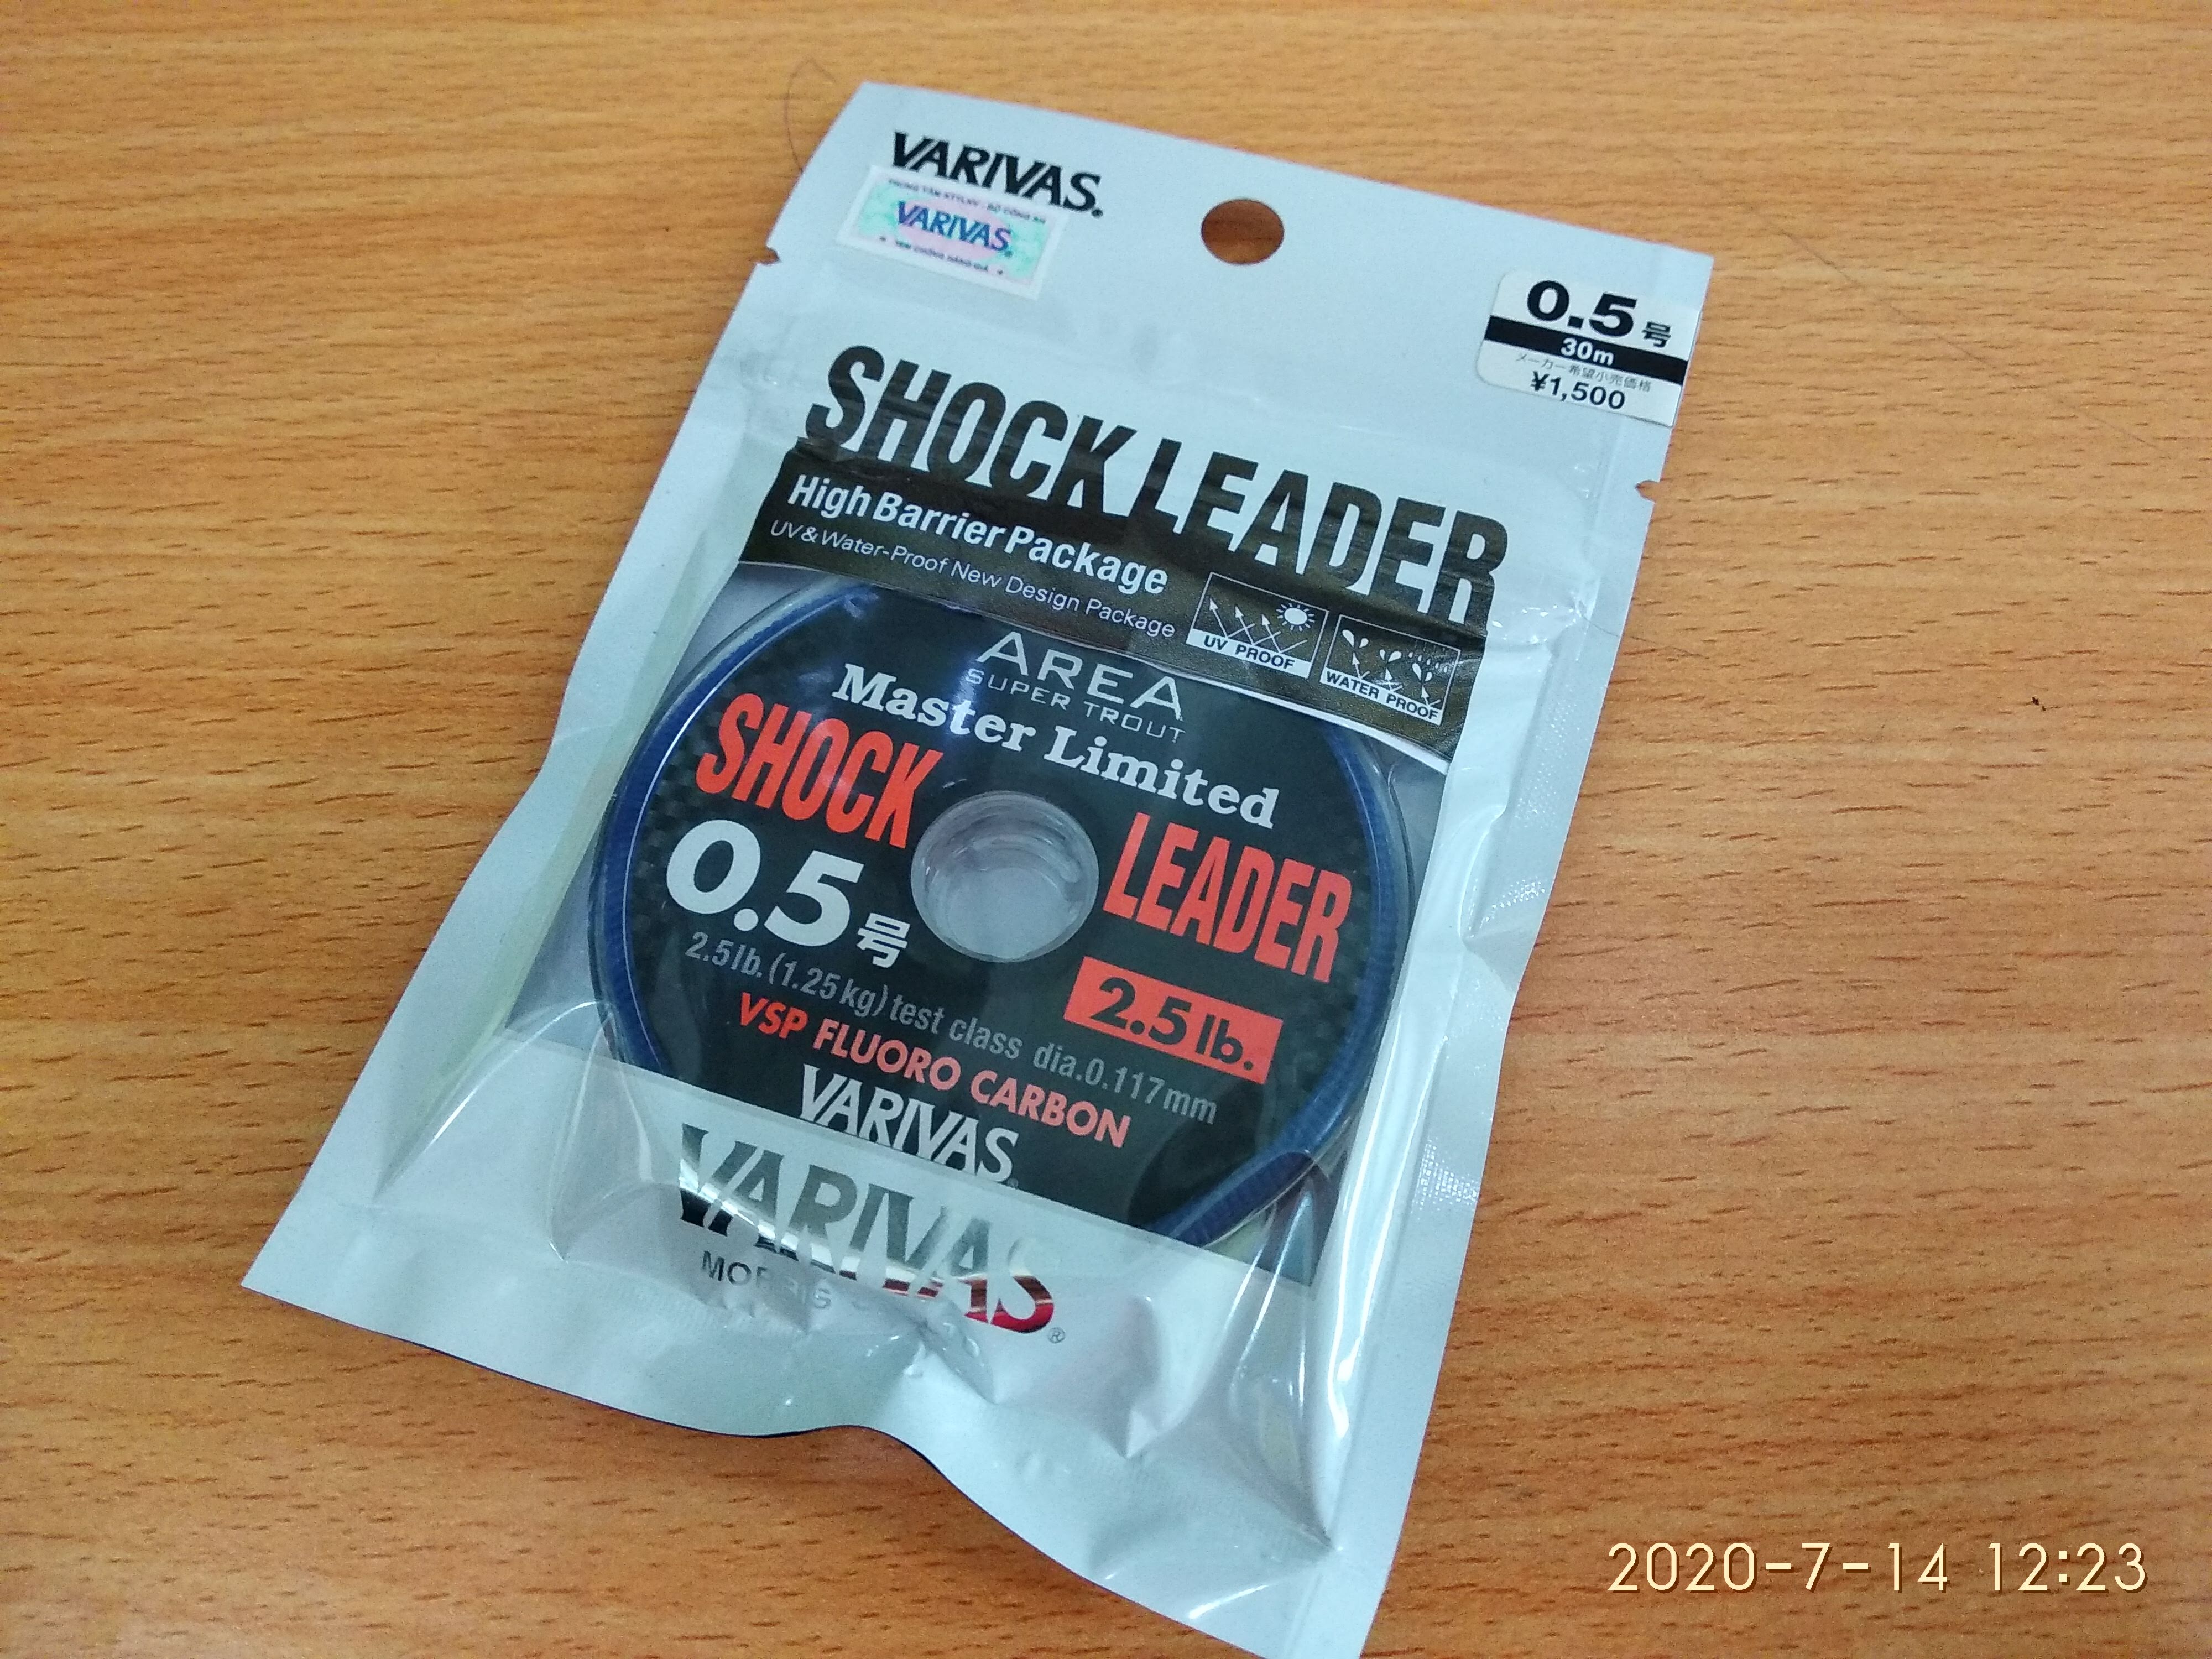 AREA Super Trout Master Limited Shock Leader VSP Fluorocarbon